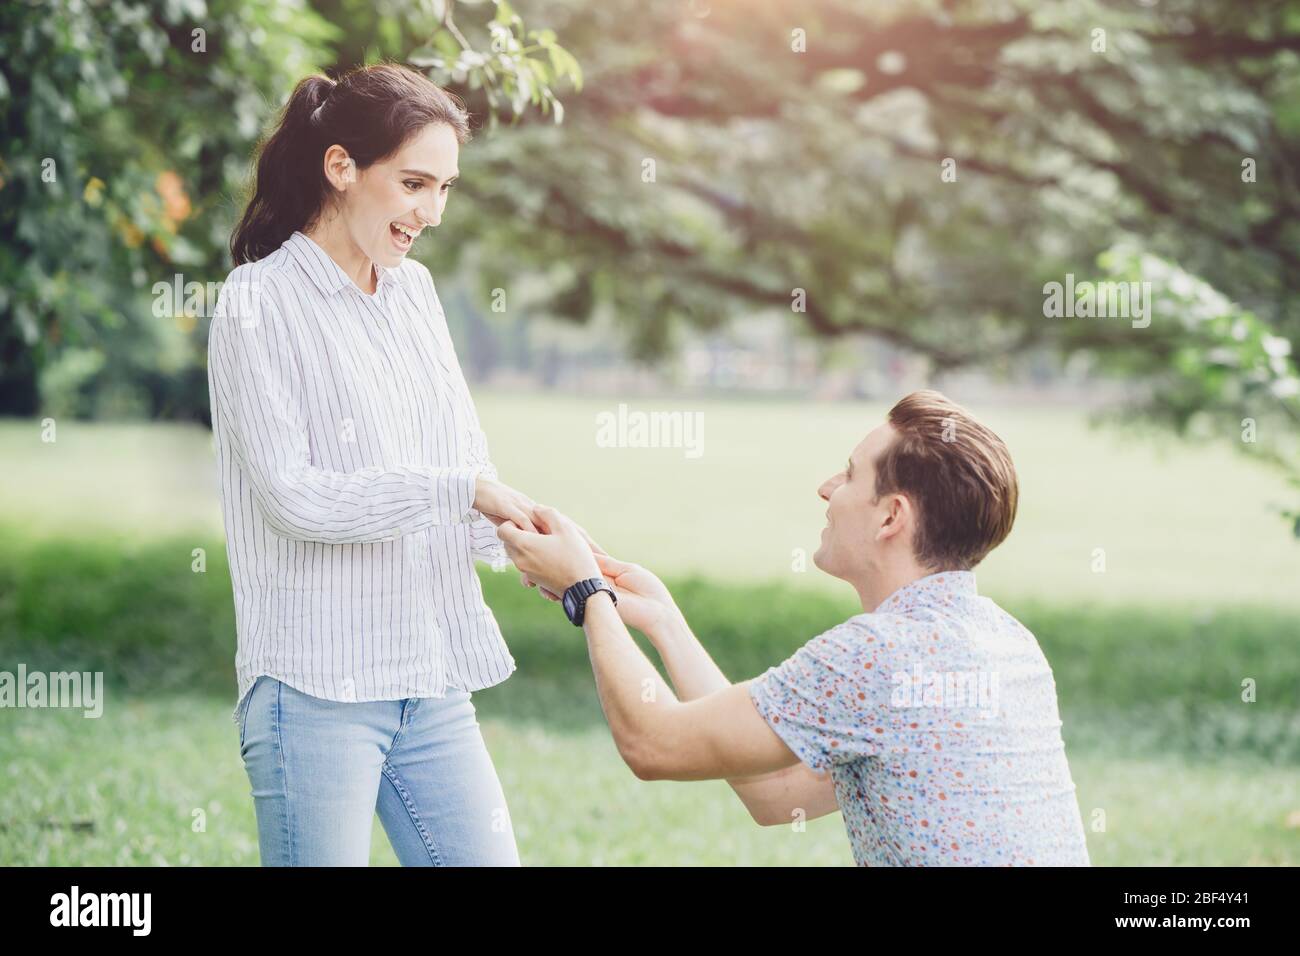 Fotos de compromisos, propuestas de matrimonio, y parejas recién comprometidas amante joven hombre y señora al aire libre verde parque. Foto de stock